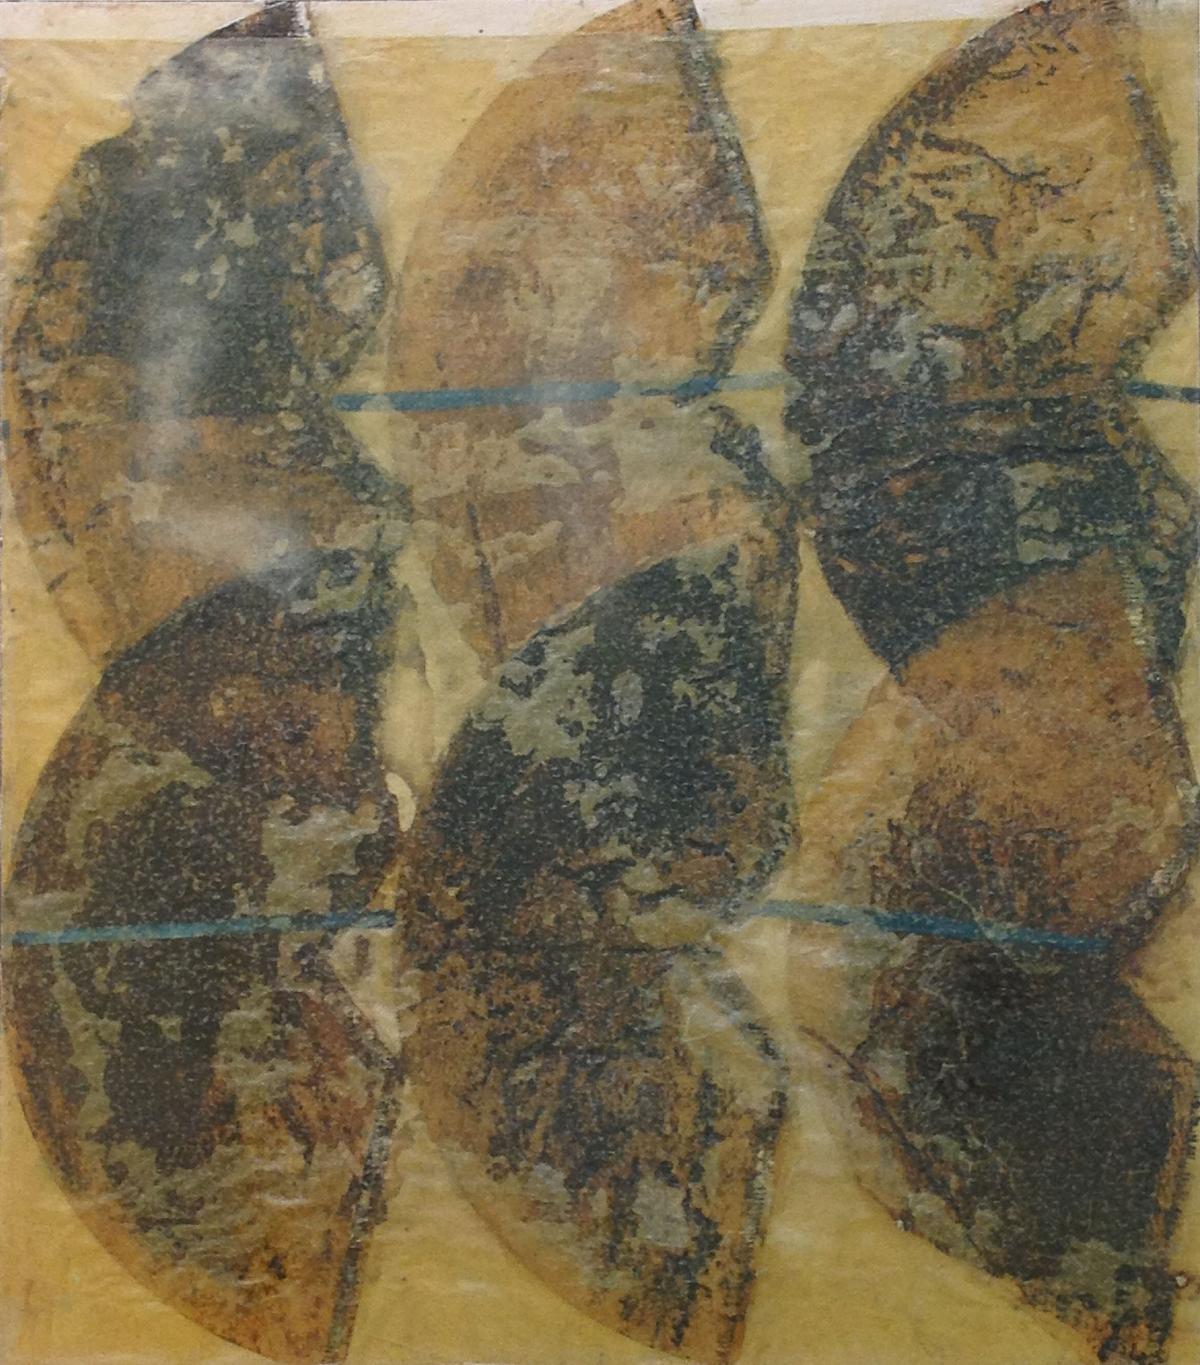 Fächer Gitter Flügel 6, 2000, Acryl, Collage und Wachs auf Holz, 50 x 44 cm